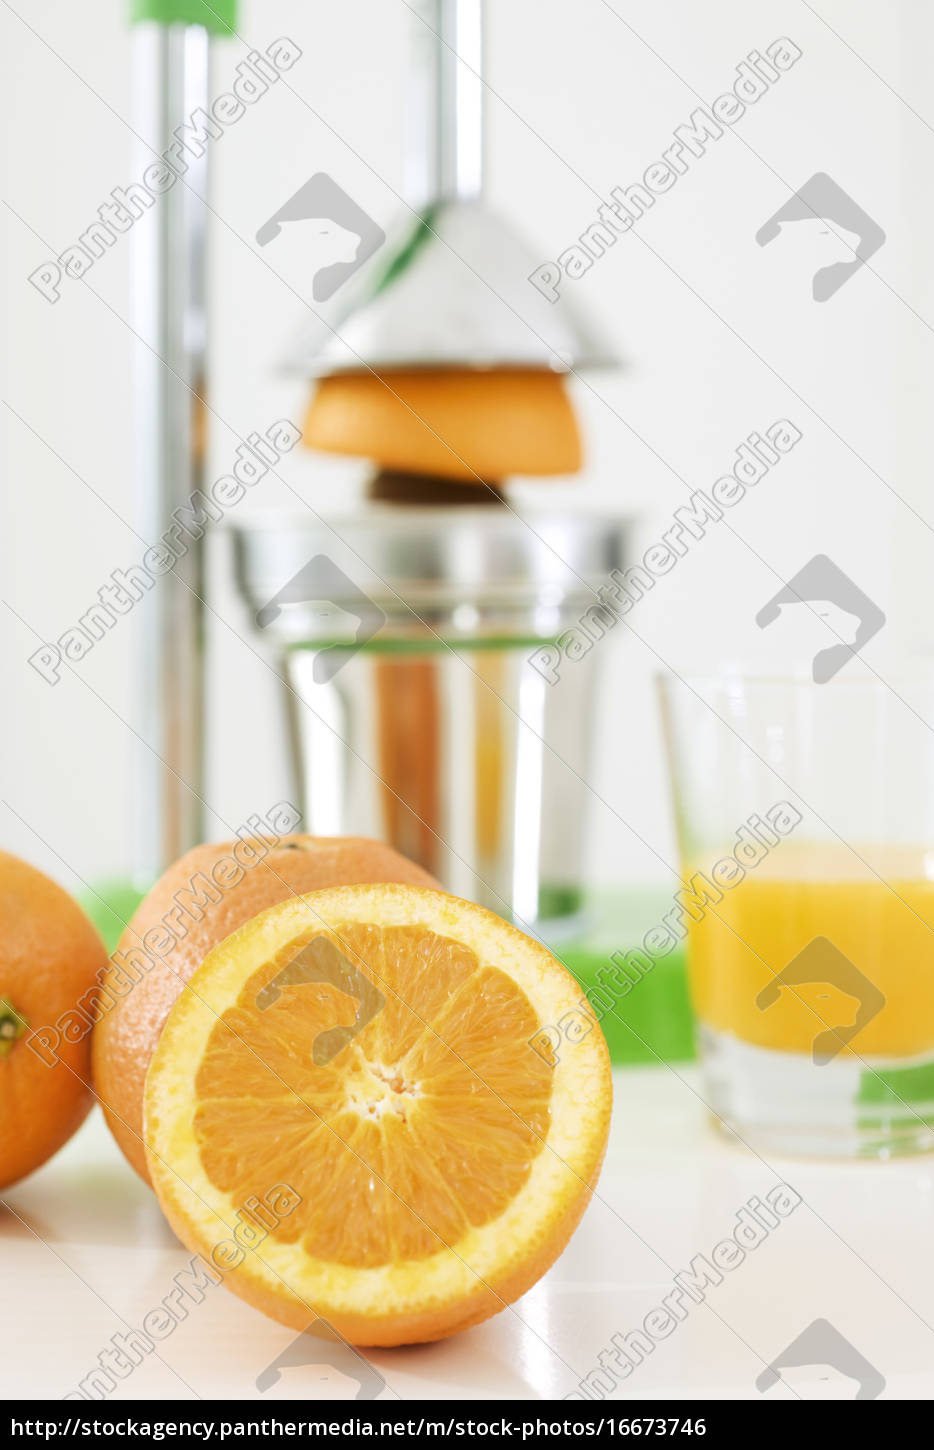 Frisch gepresster Orangensaft - Stock Photo - #16673746 | Bildagentur ...